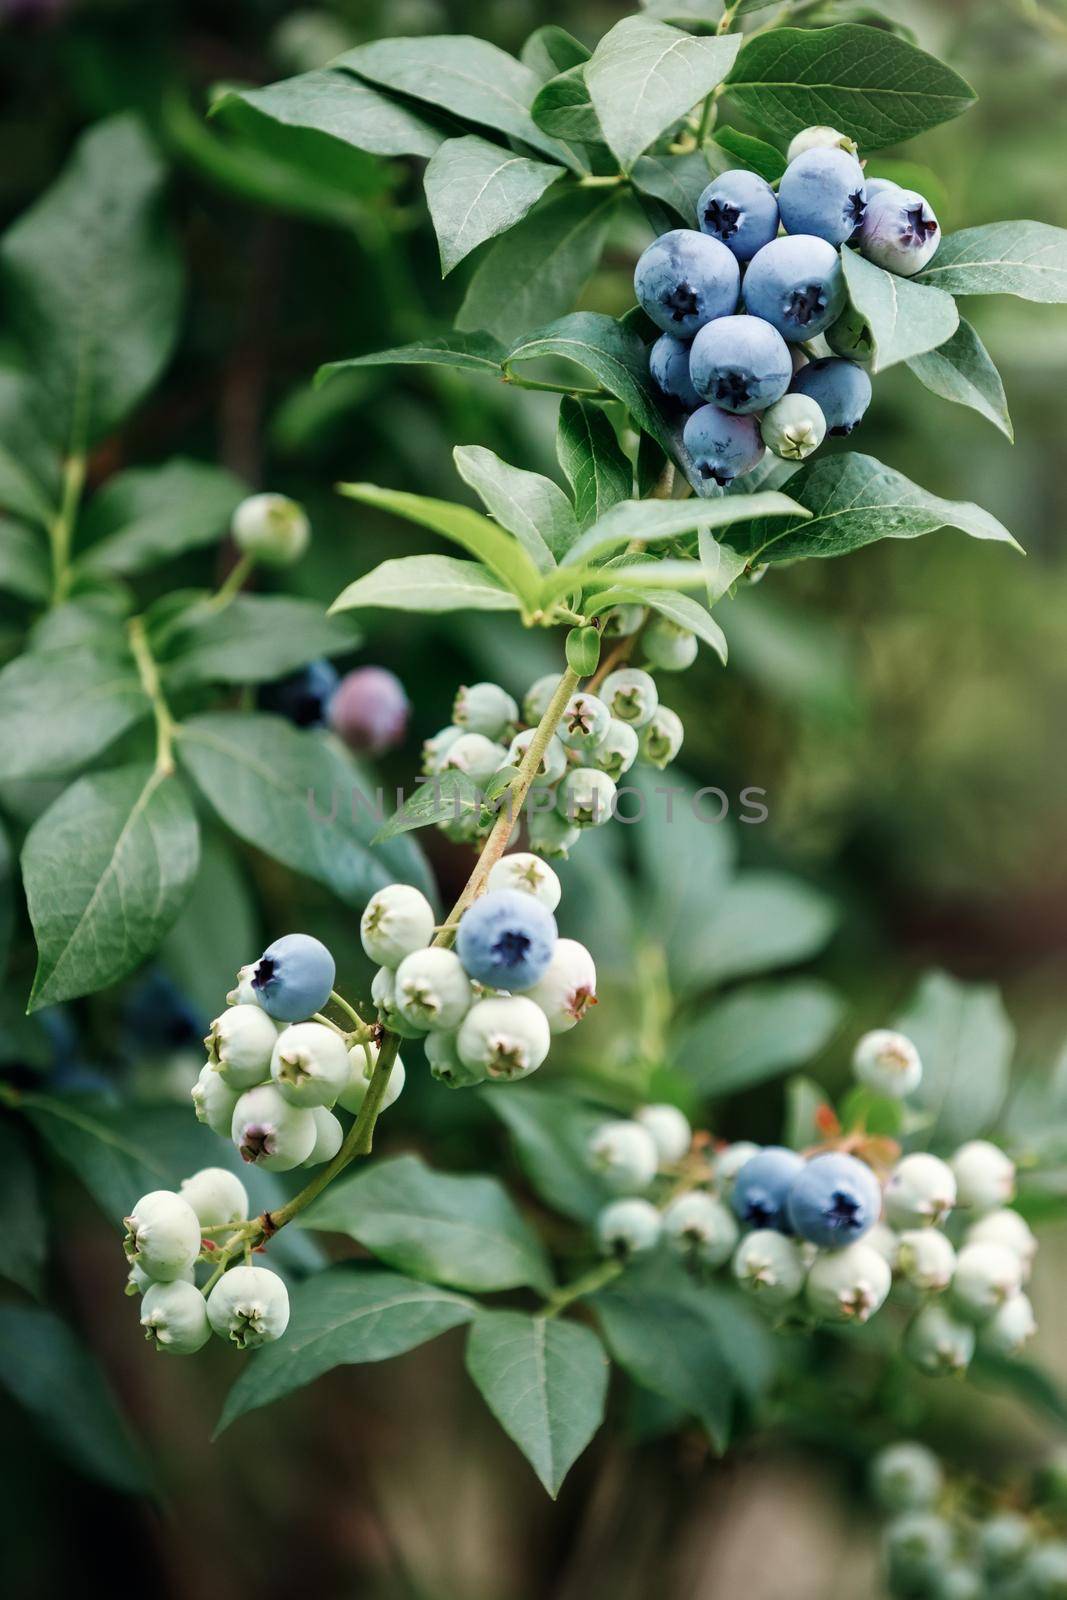 Blueberries growing on bush in a field by Lincikas